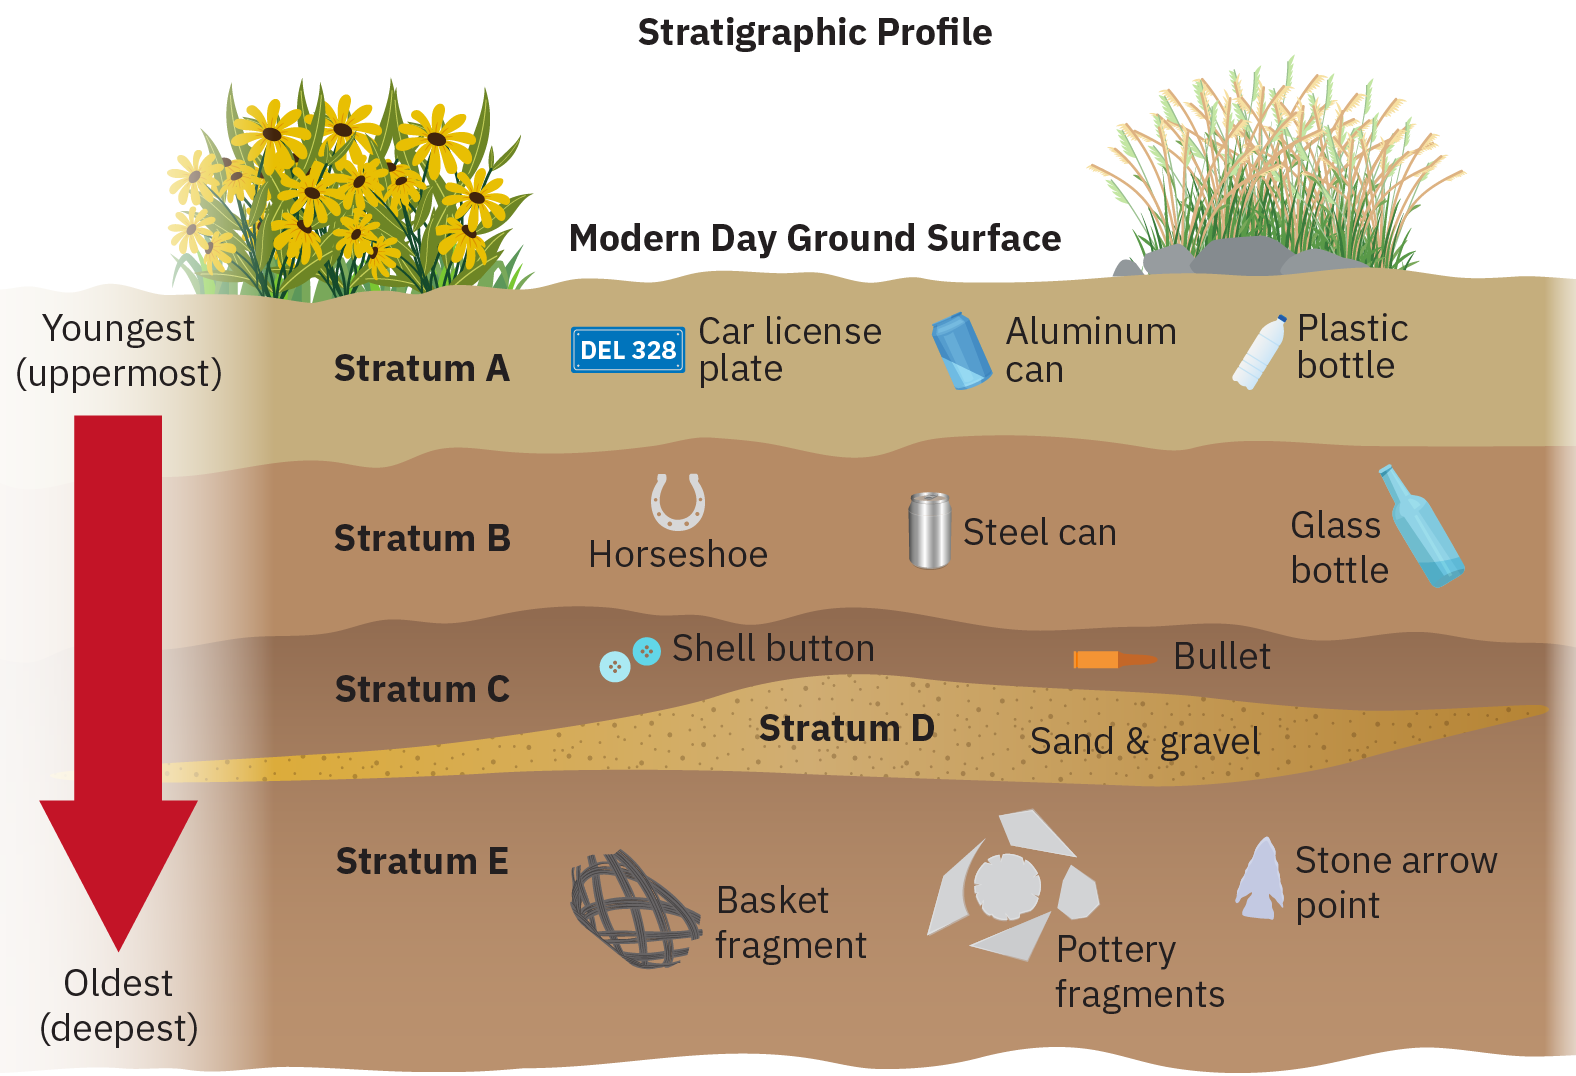 描绘了想象中的地球地下横截面的地层剖面图的草图。 箭头表示靠近底部的物品较旧，而靠近顶部的物品则较新。 标有 Stratum E 的最低关卡显示为包含篮子碎片、陶器碎片和石箭点。 上方显示了地层 D，其中包含沙子和砾石。 向上移动的下一层是 Stratum C，它包含两个弹壳纽扣和一颗子弹。 除此之外，Stratum B 包含一个马蹄铁、一个钢罐和一个玻璃瓶。 最上层的 Stratum A 包含一个汽车牌照、一个铝罐和一个塑料瓶。